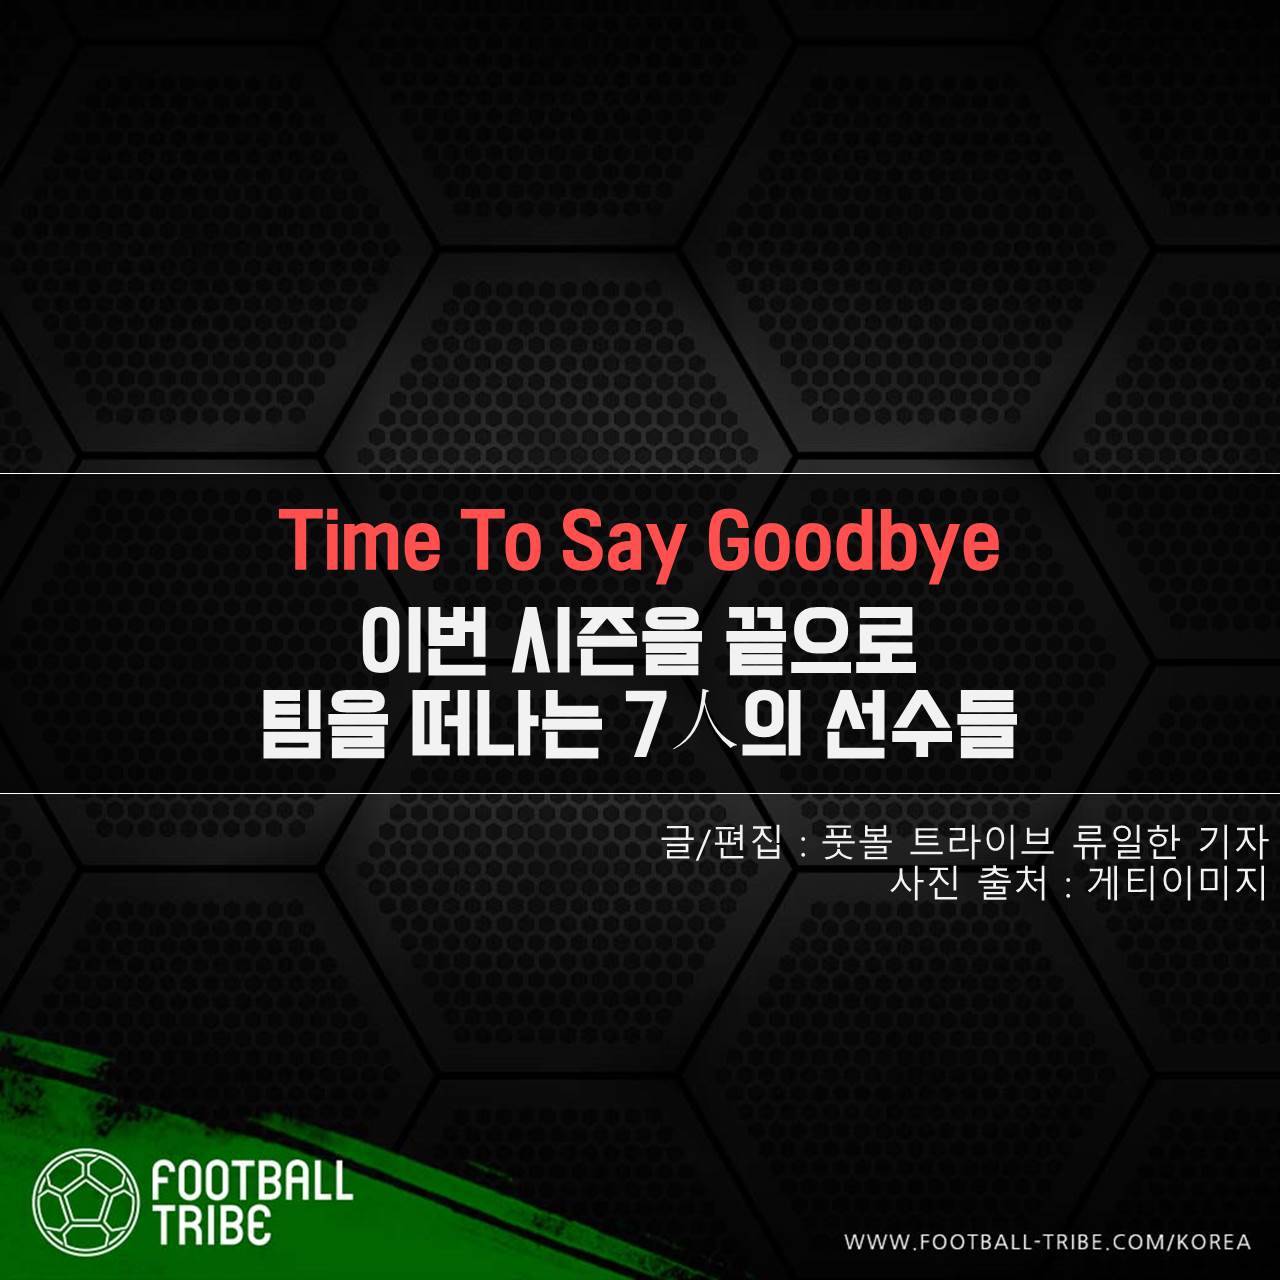 [카드 뉴스] 이번 시즌을 끝으로 팀을 떠나는 7人의 선수들